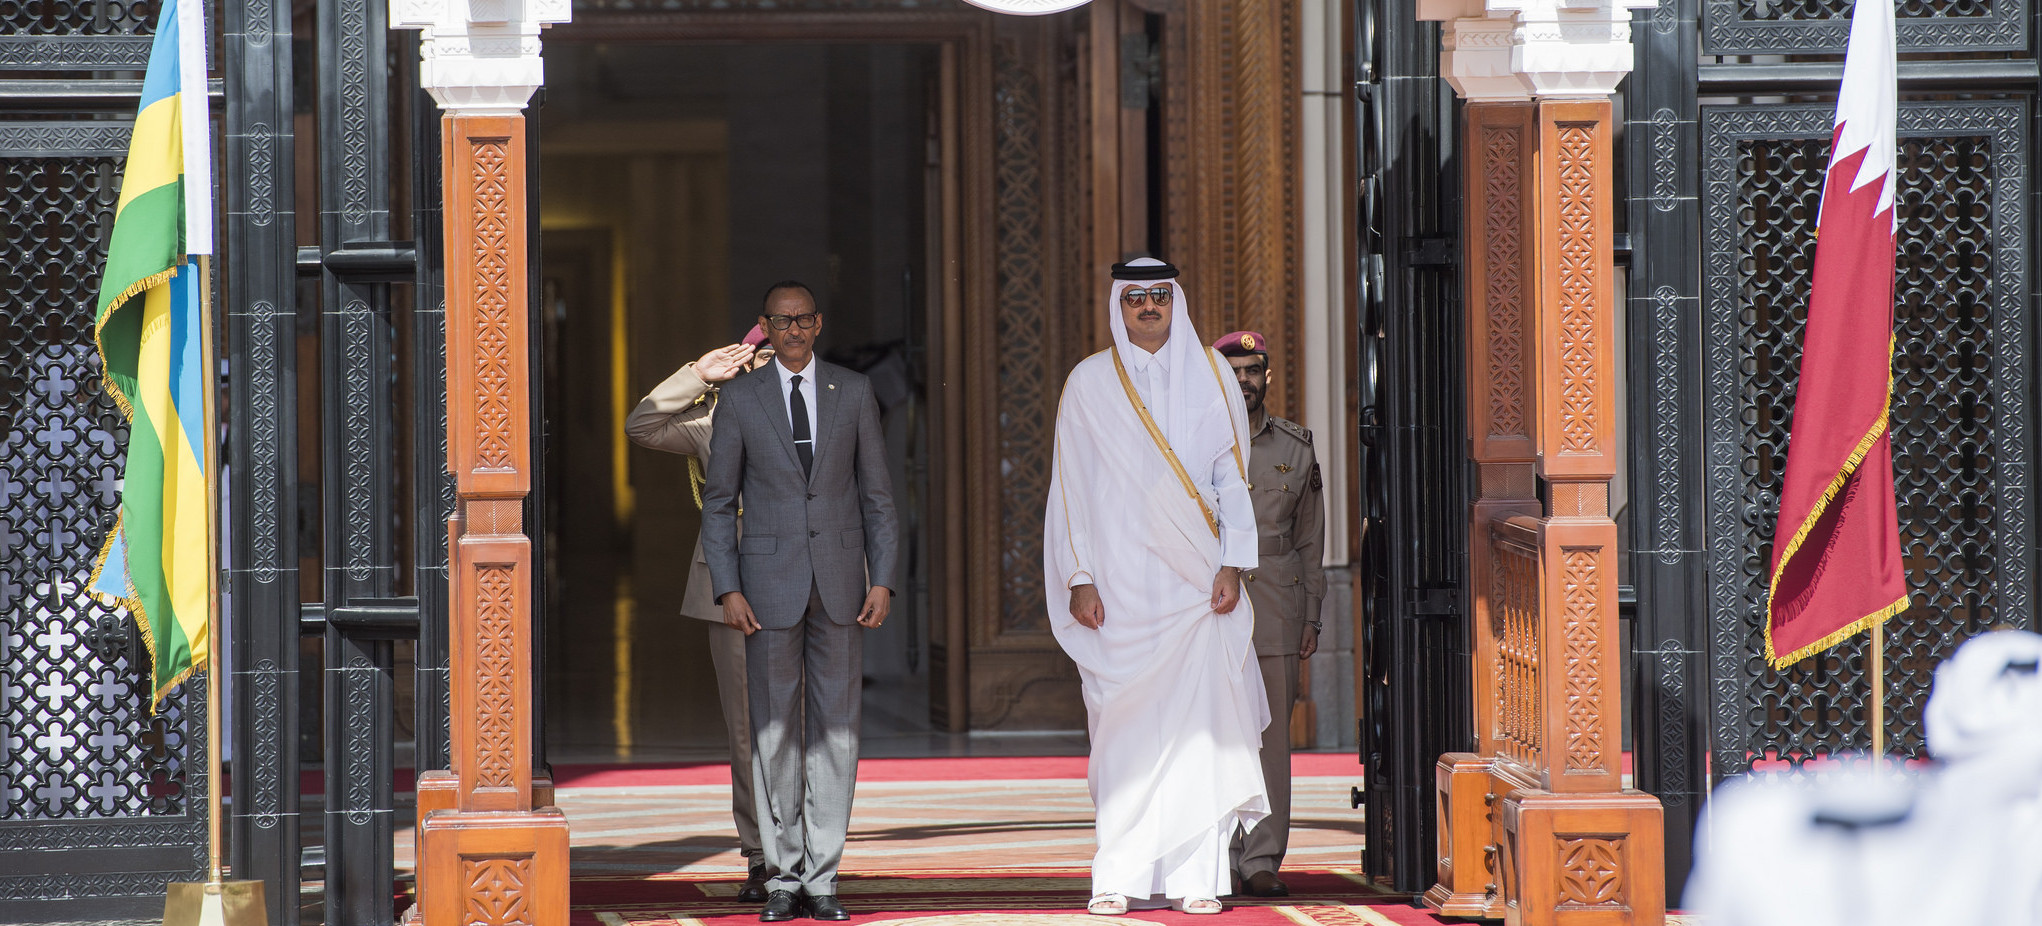 L’émir Tamim du Qatar se rend au Rwanda alors que l’on annonce sa visite au Caire – Doha News